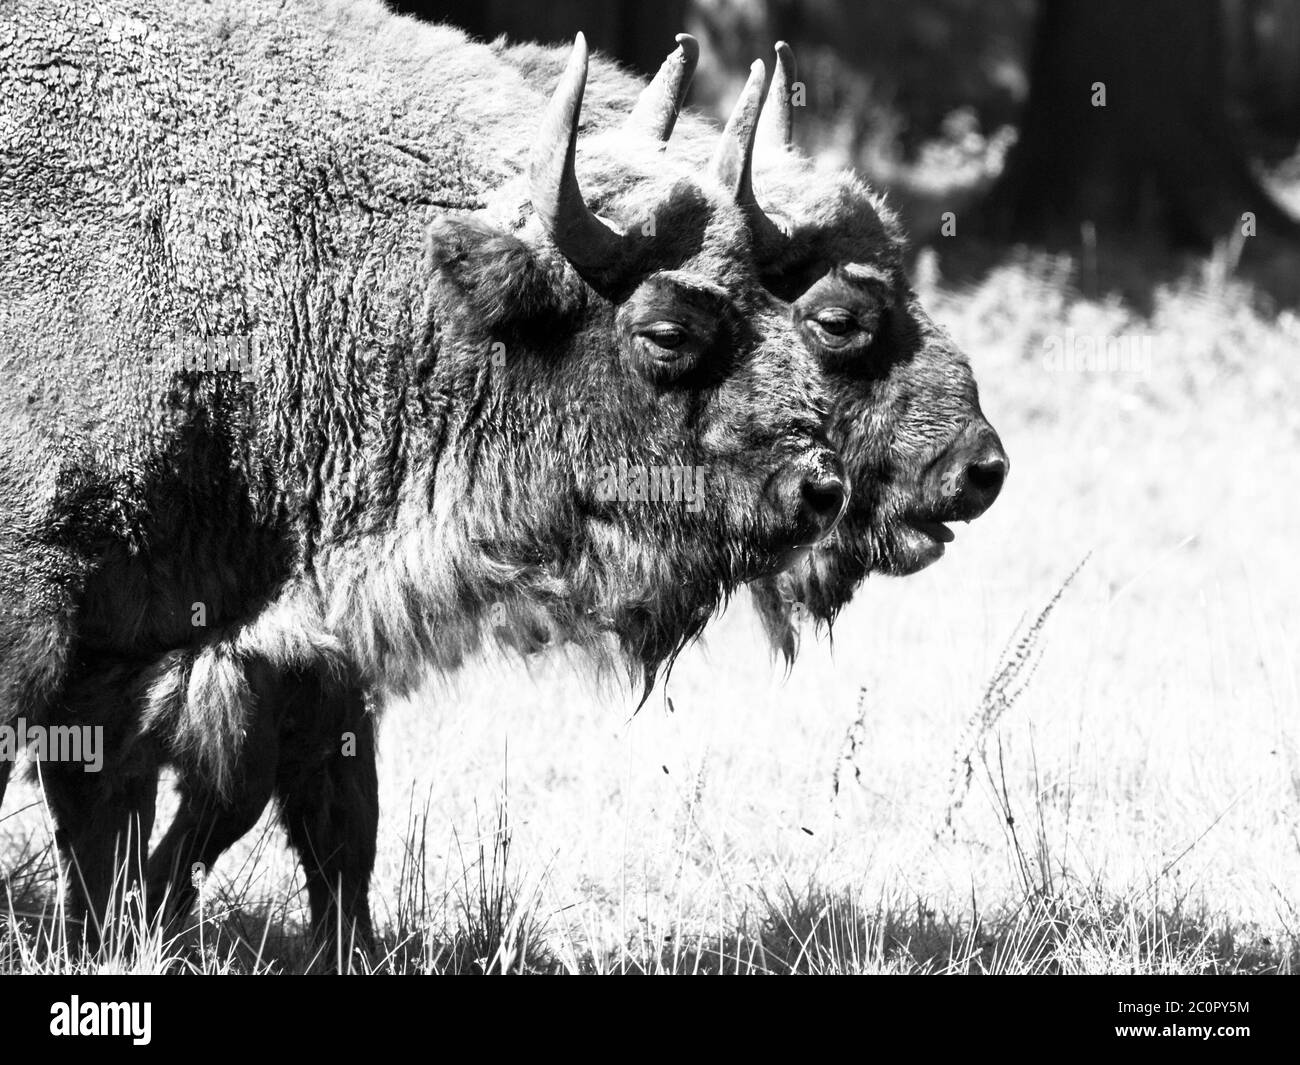 Due bisoni di legno europei, o saggi, nella foresta primordiale di Bialowieza. Immagine in bianco e nero. Foto Stock